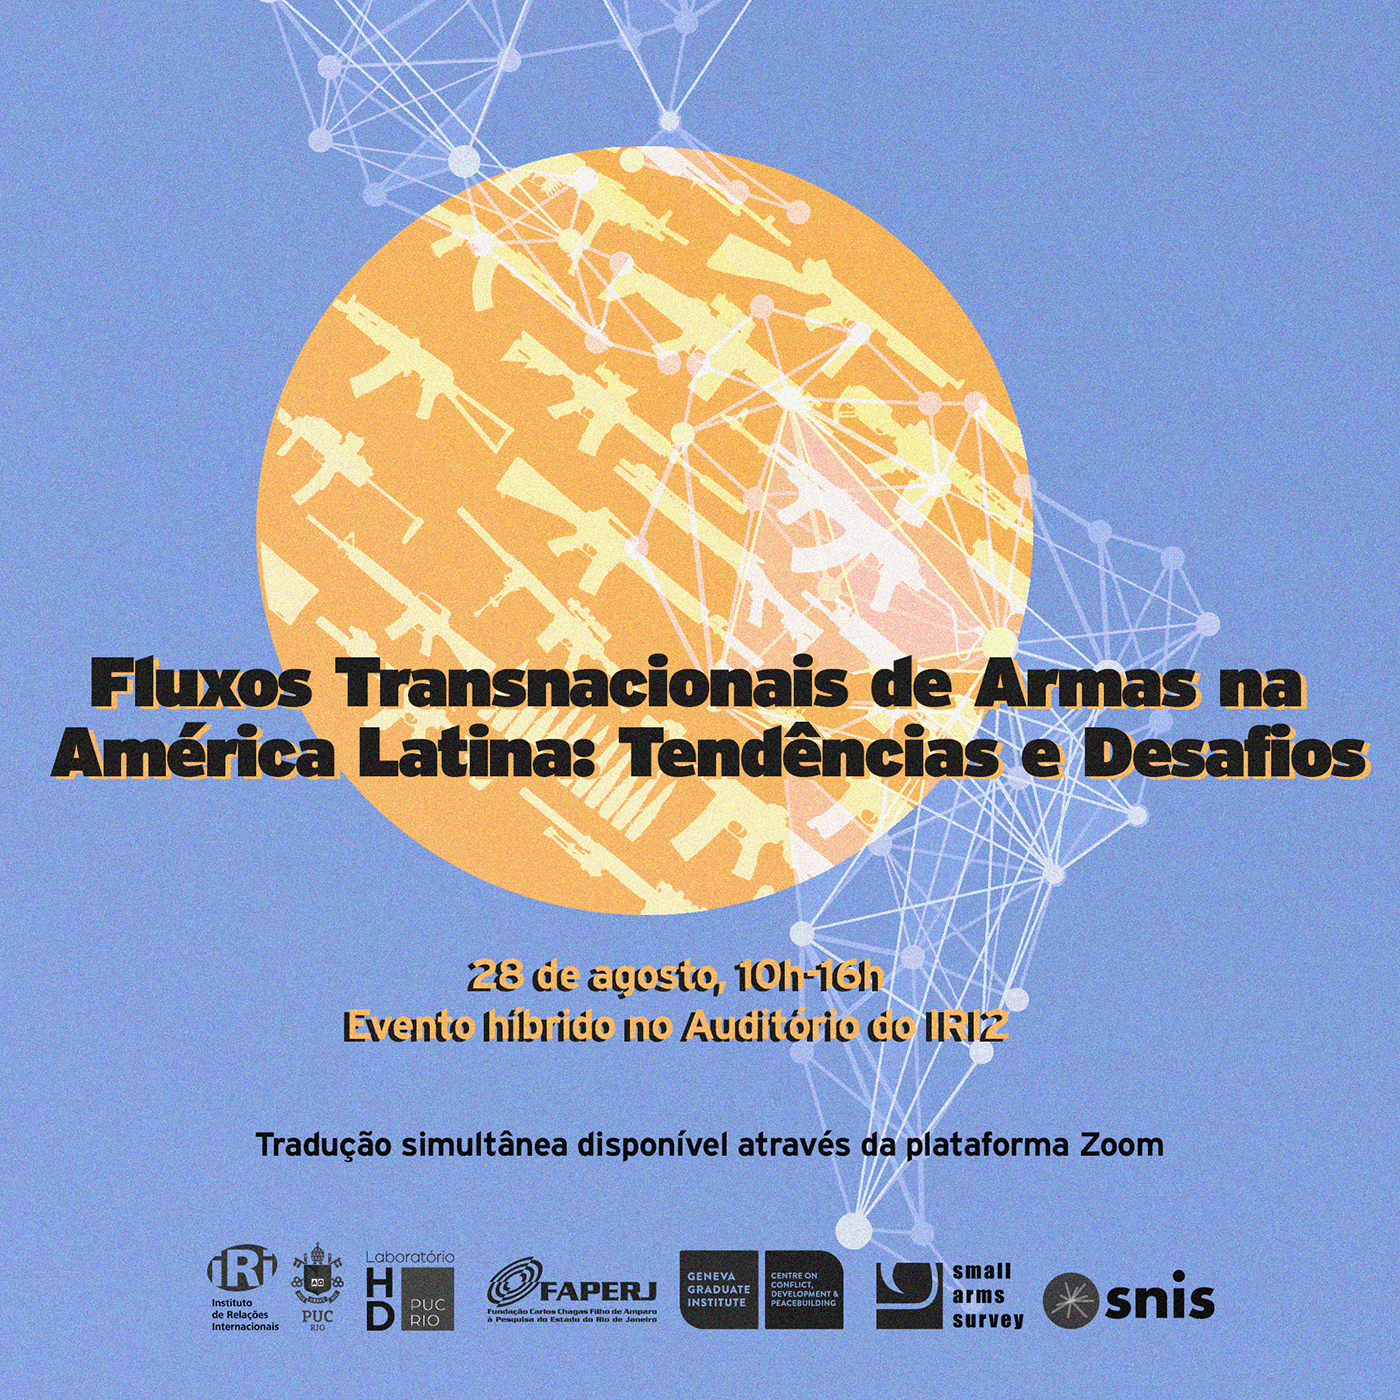 Fluxos transnacionais de armas na América Latina: tendências e desafios